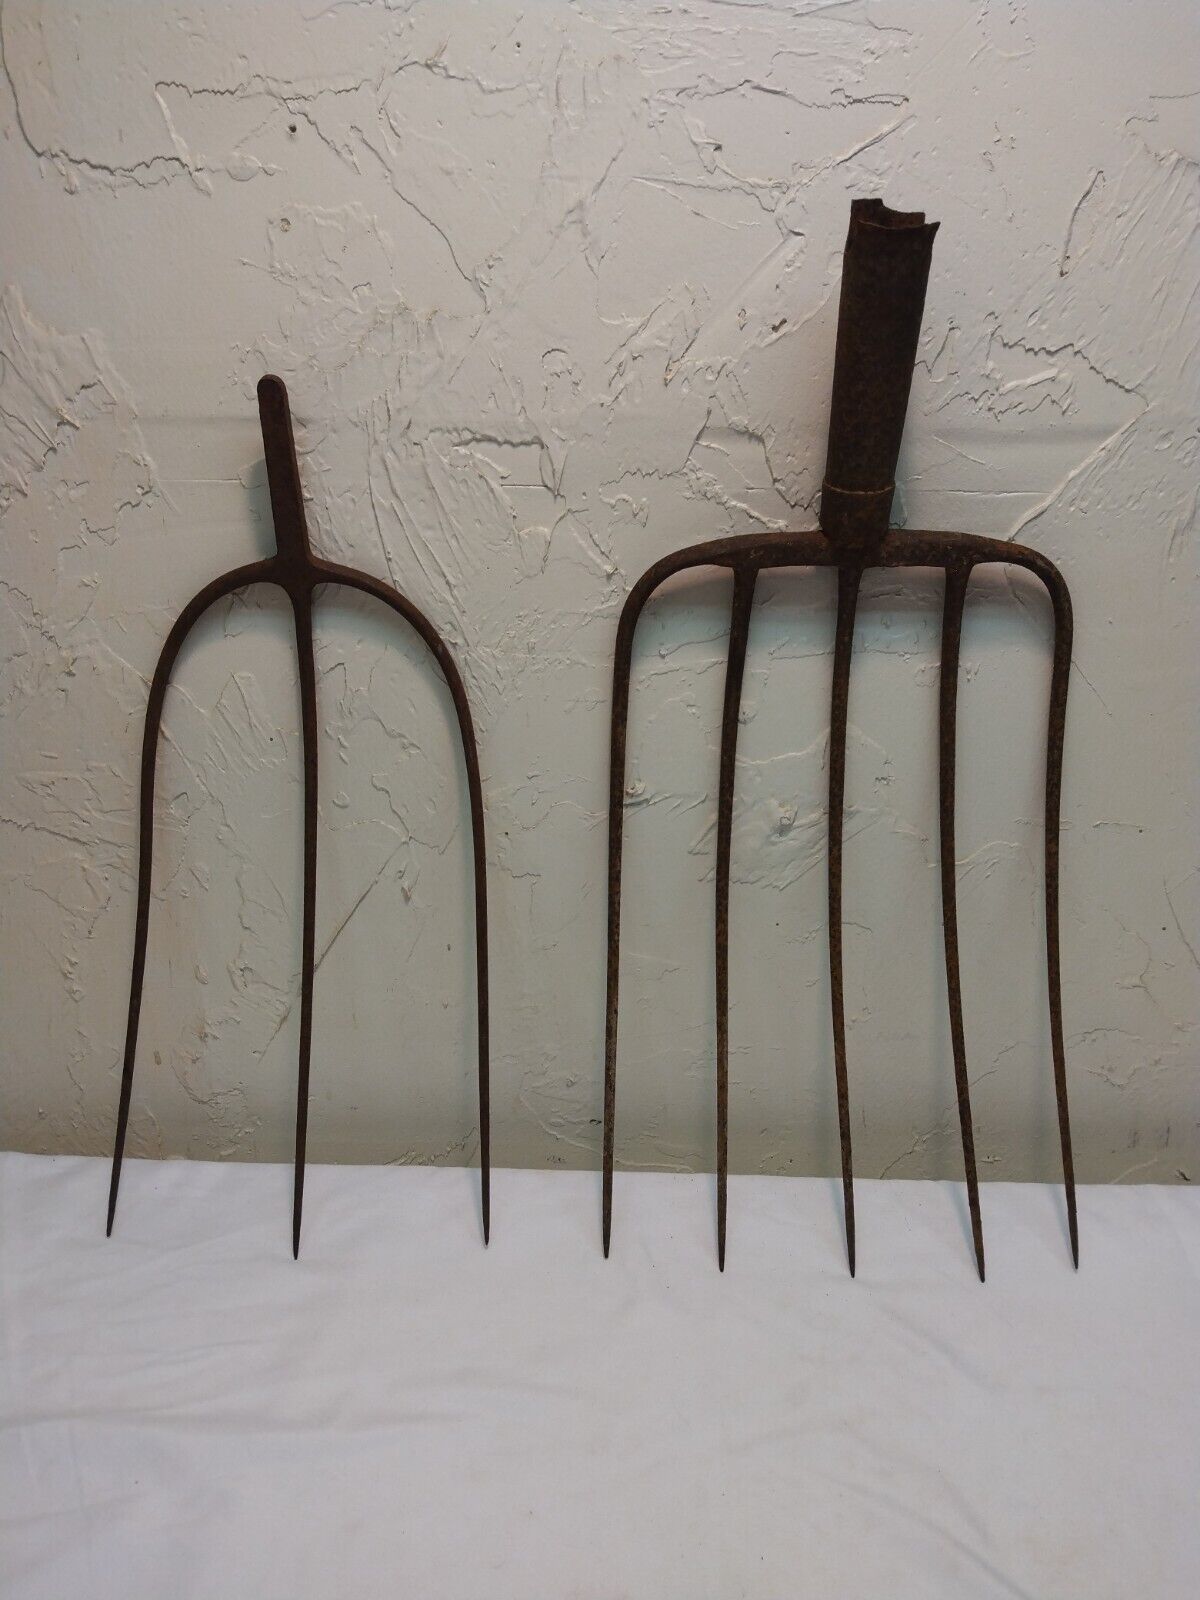 two antique cast iron pitchforks